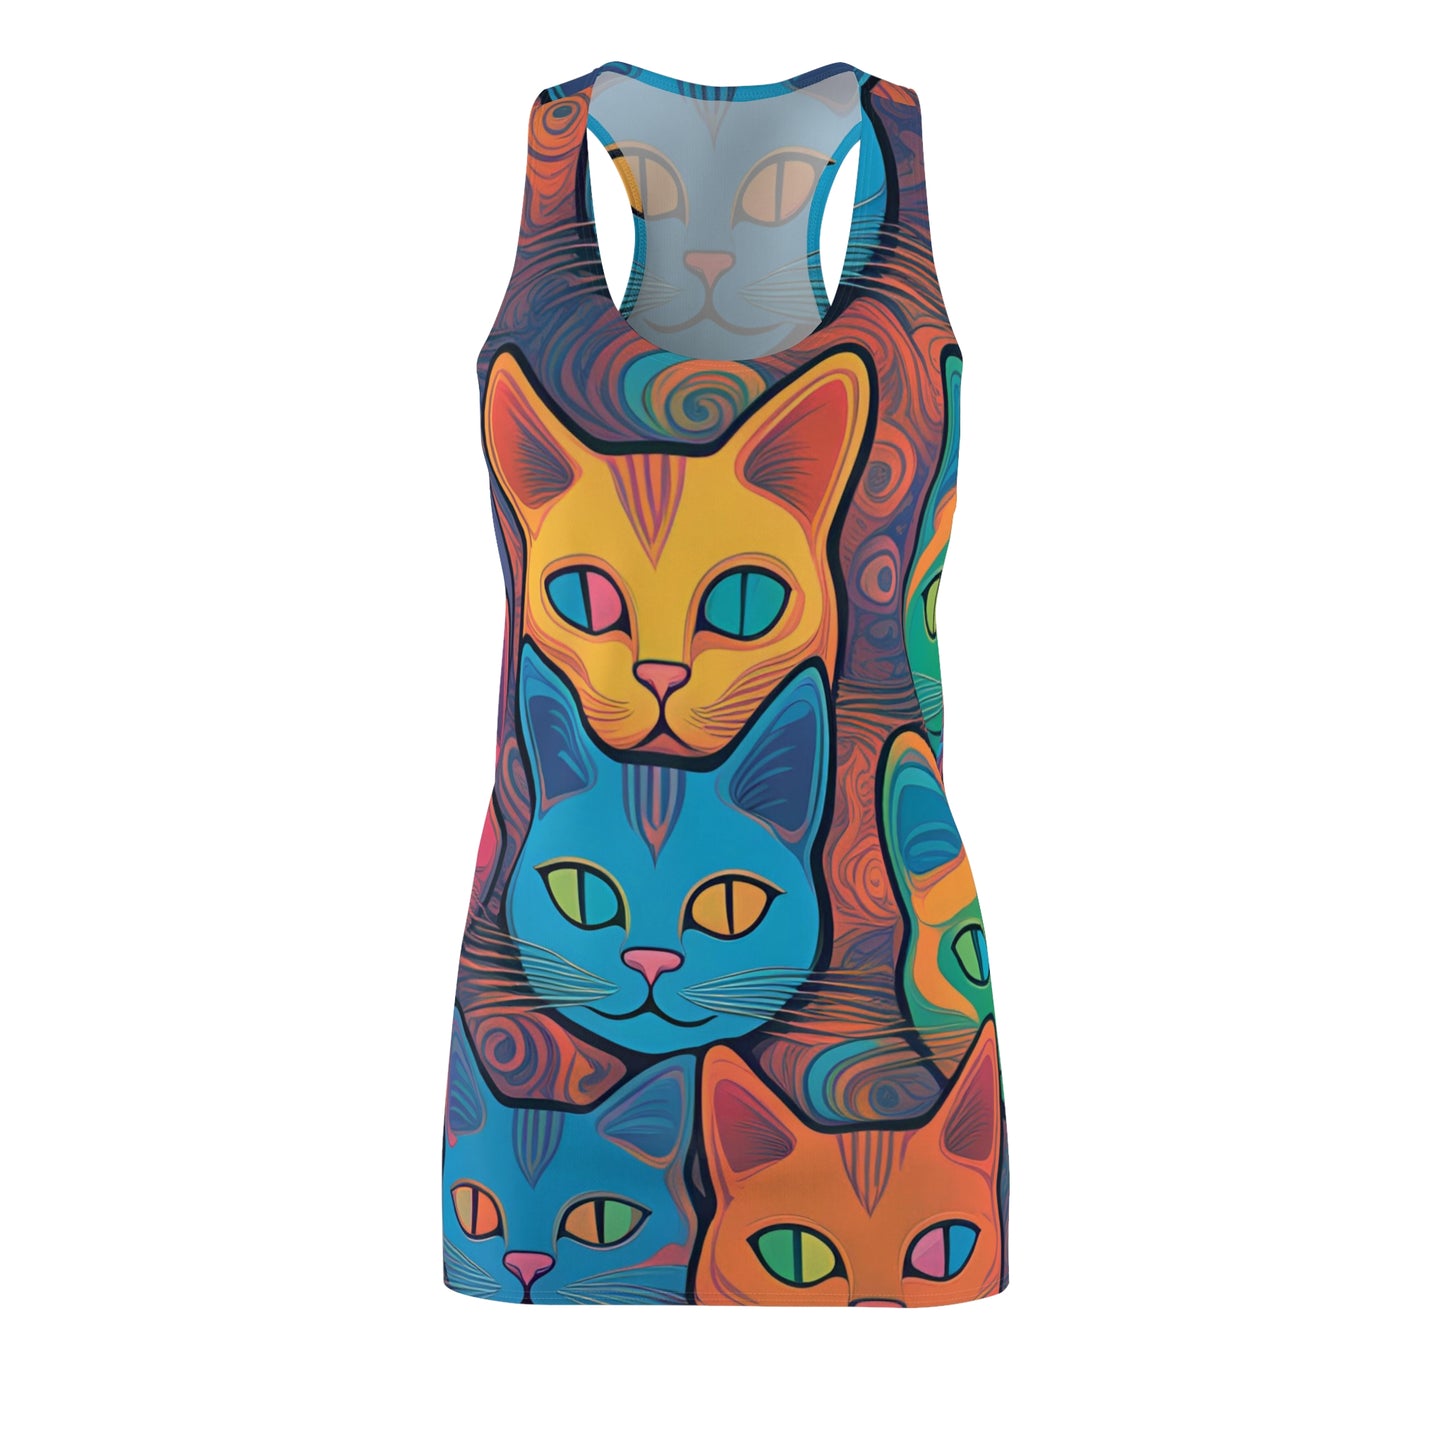 Meow Powers Women's Cut & Sew Racerback Dress (AOP)